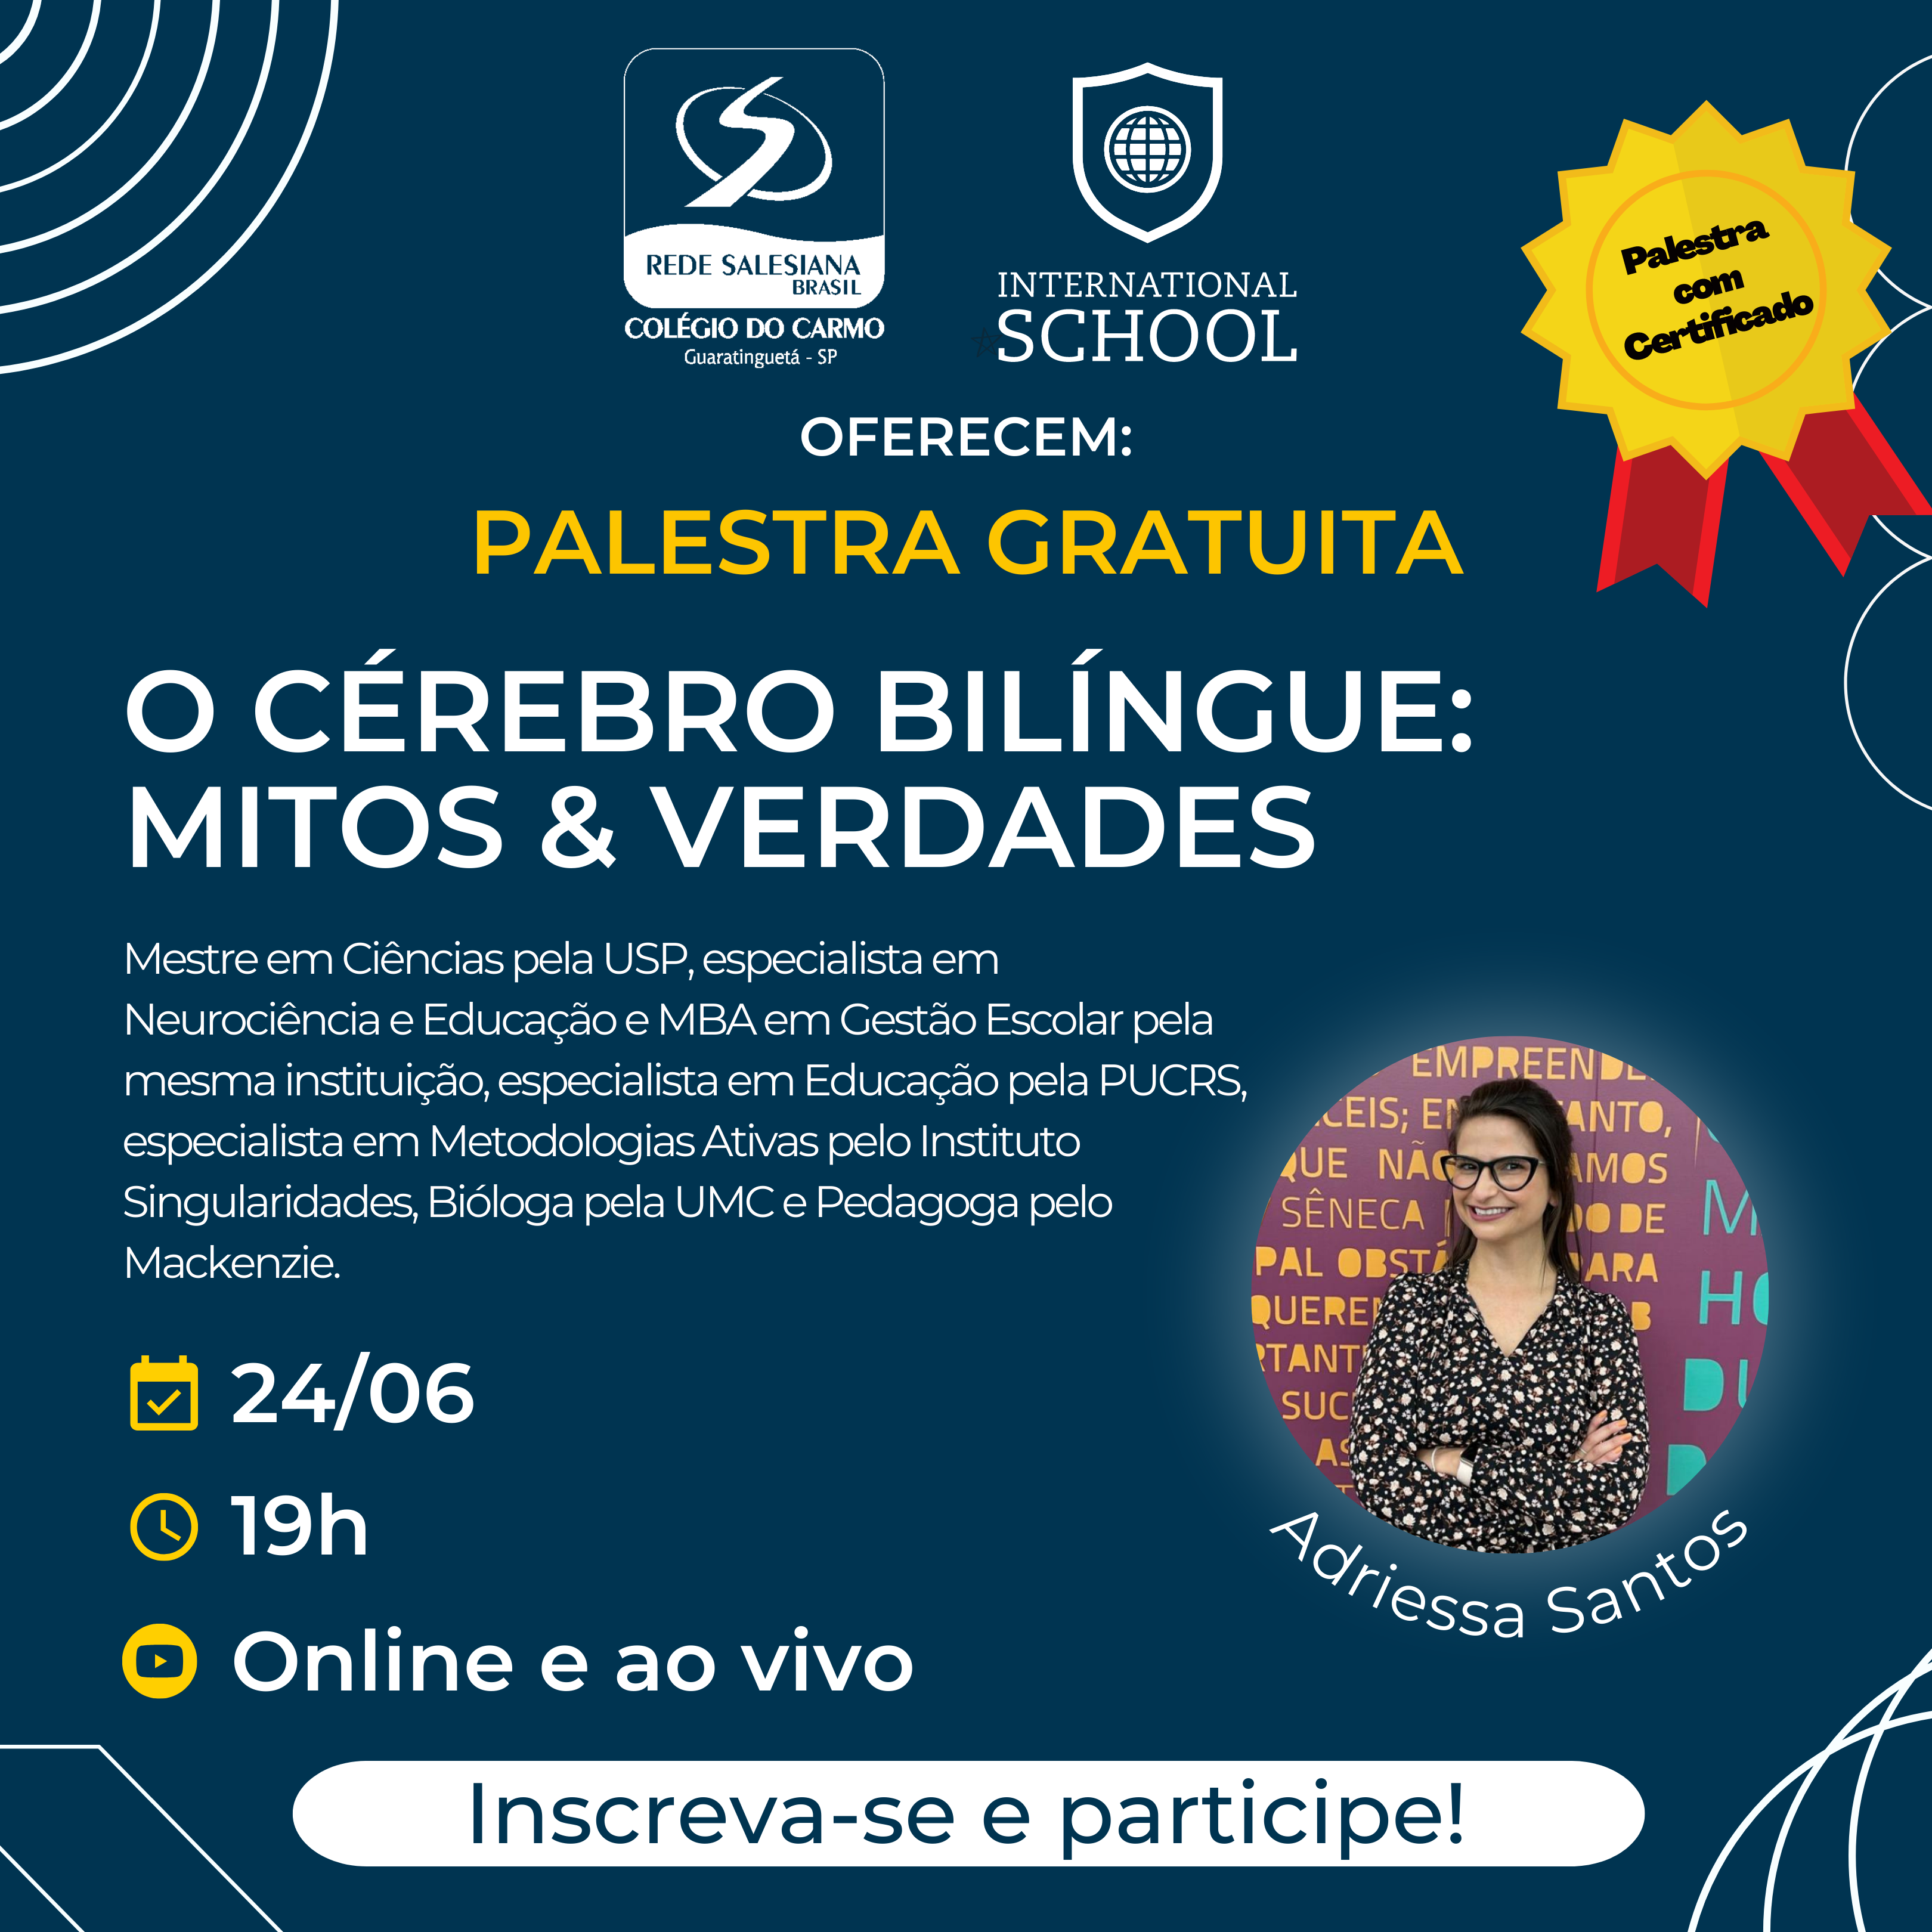 Colégio do Carmo e International School oferecem palestra gratuita sobre "Educação Bilíngue" online e com Certificado